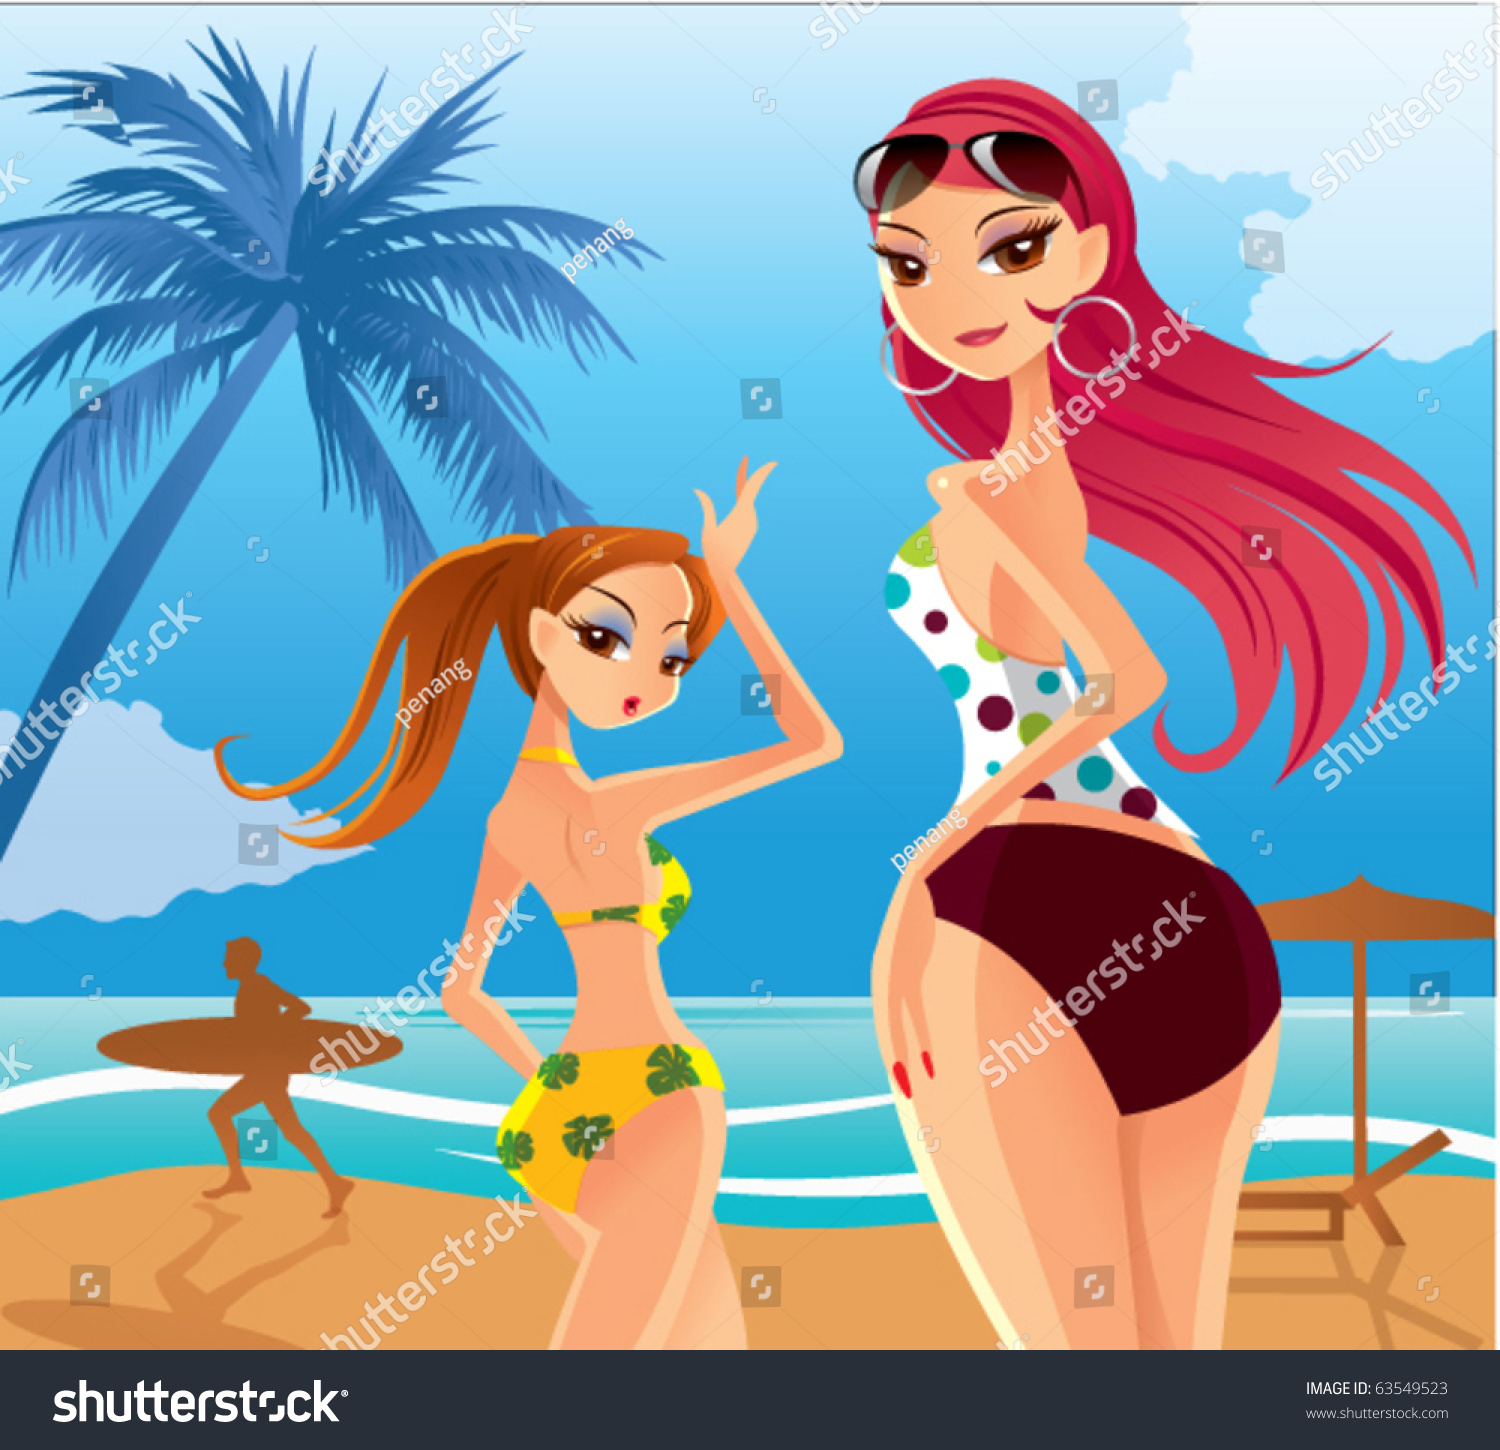 Vektor Stok Sexy Lady Cartoon Tanpa Royalti 63549523 Shutterstock 7612